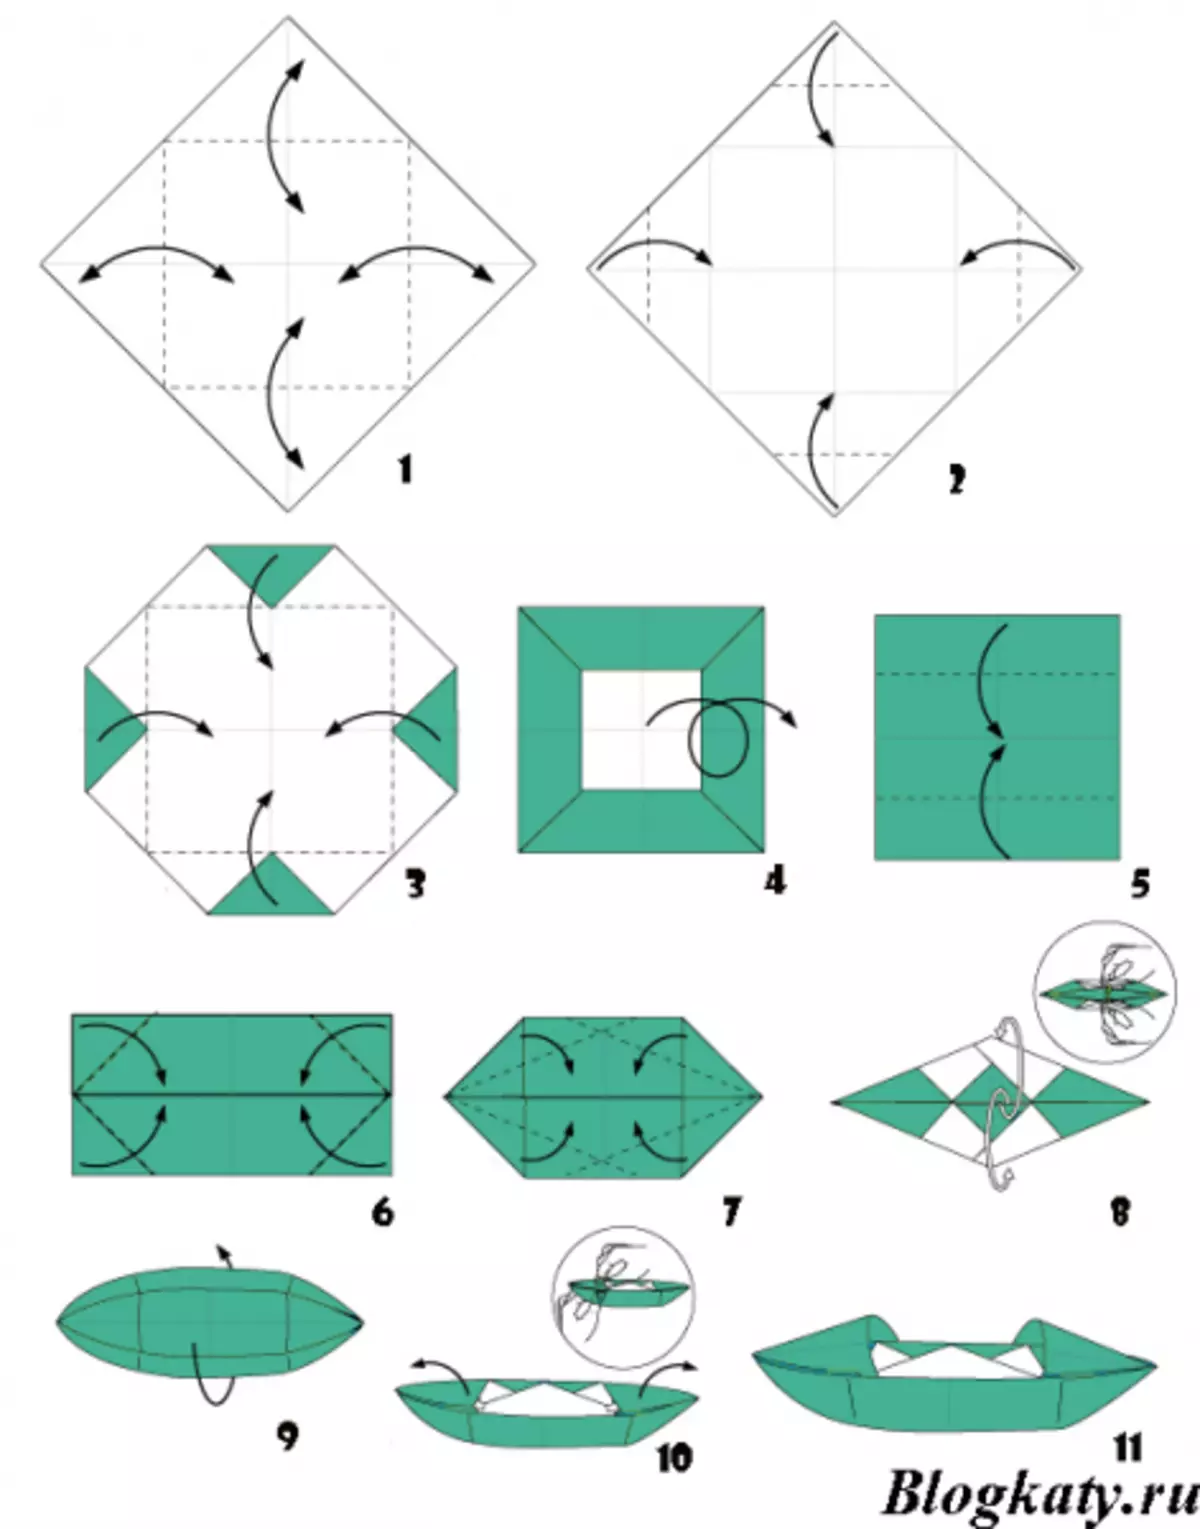 Схема кораблика оригами для детей. Оригами кораблик из бумаги для детей простой. Бумажный кораблик схема складывания. Как делать кораблик из бумаги а4. Кораблик из бумаги катер оригами схема.